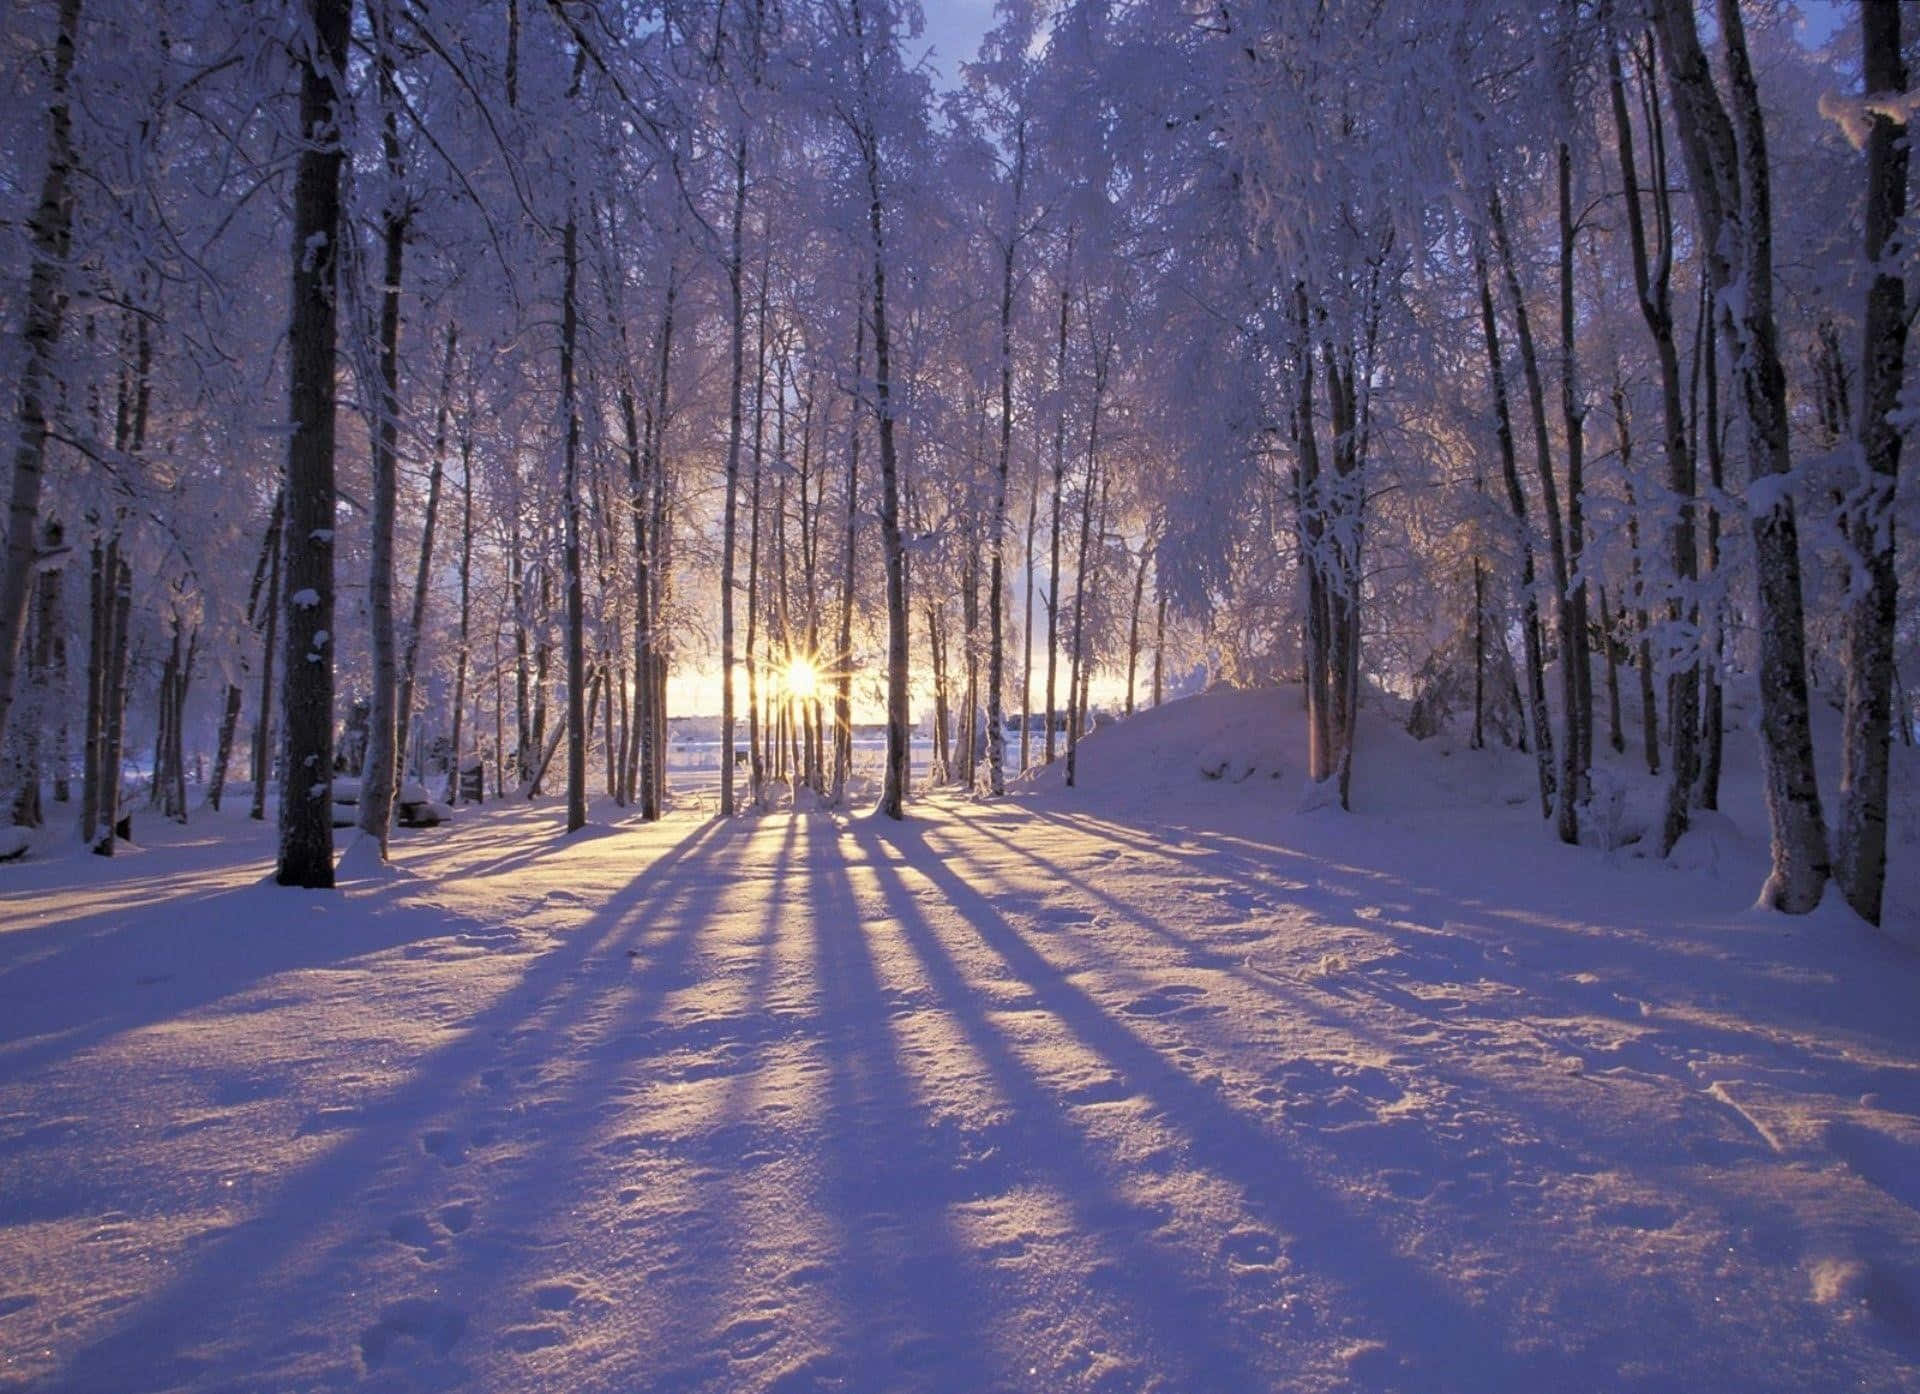 Winter Wonderland - Snowy Landscape&Frozen Trees Wallpaper